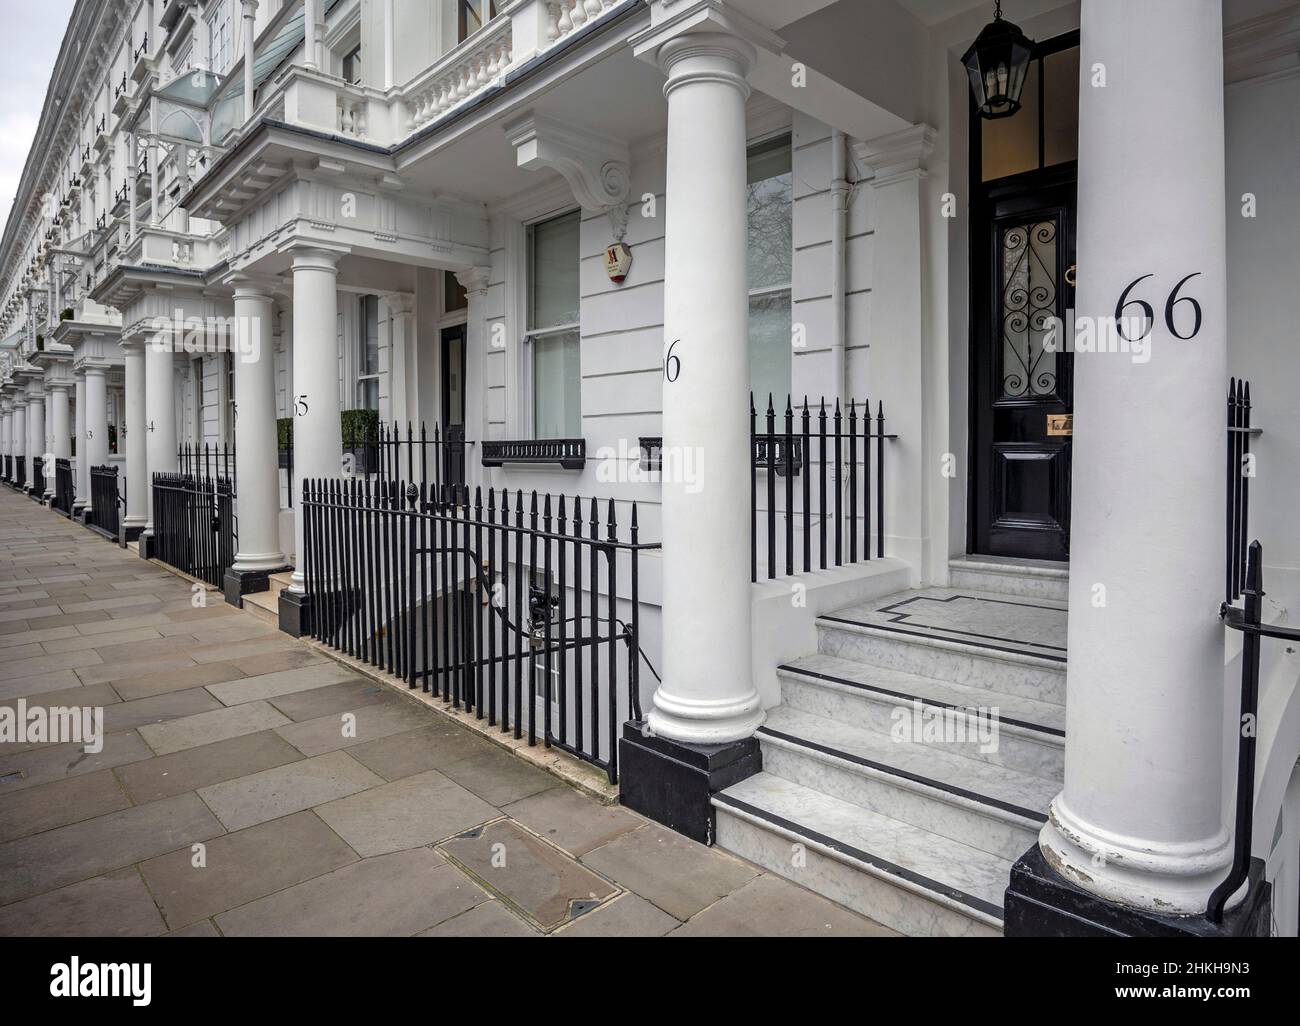 GROSSBRITANNIEN / England /London /The Royal Borough of Kensington and Chelsea Cadogan Place London mit einer Reihe von regelmäßigen Gebäuden. Luxusimmobilie. Stockfoto